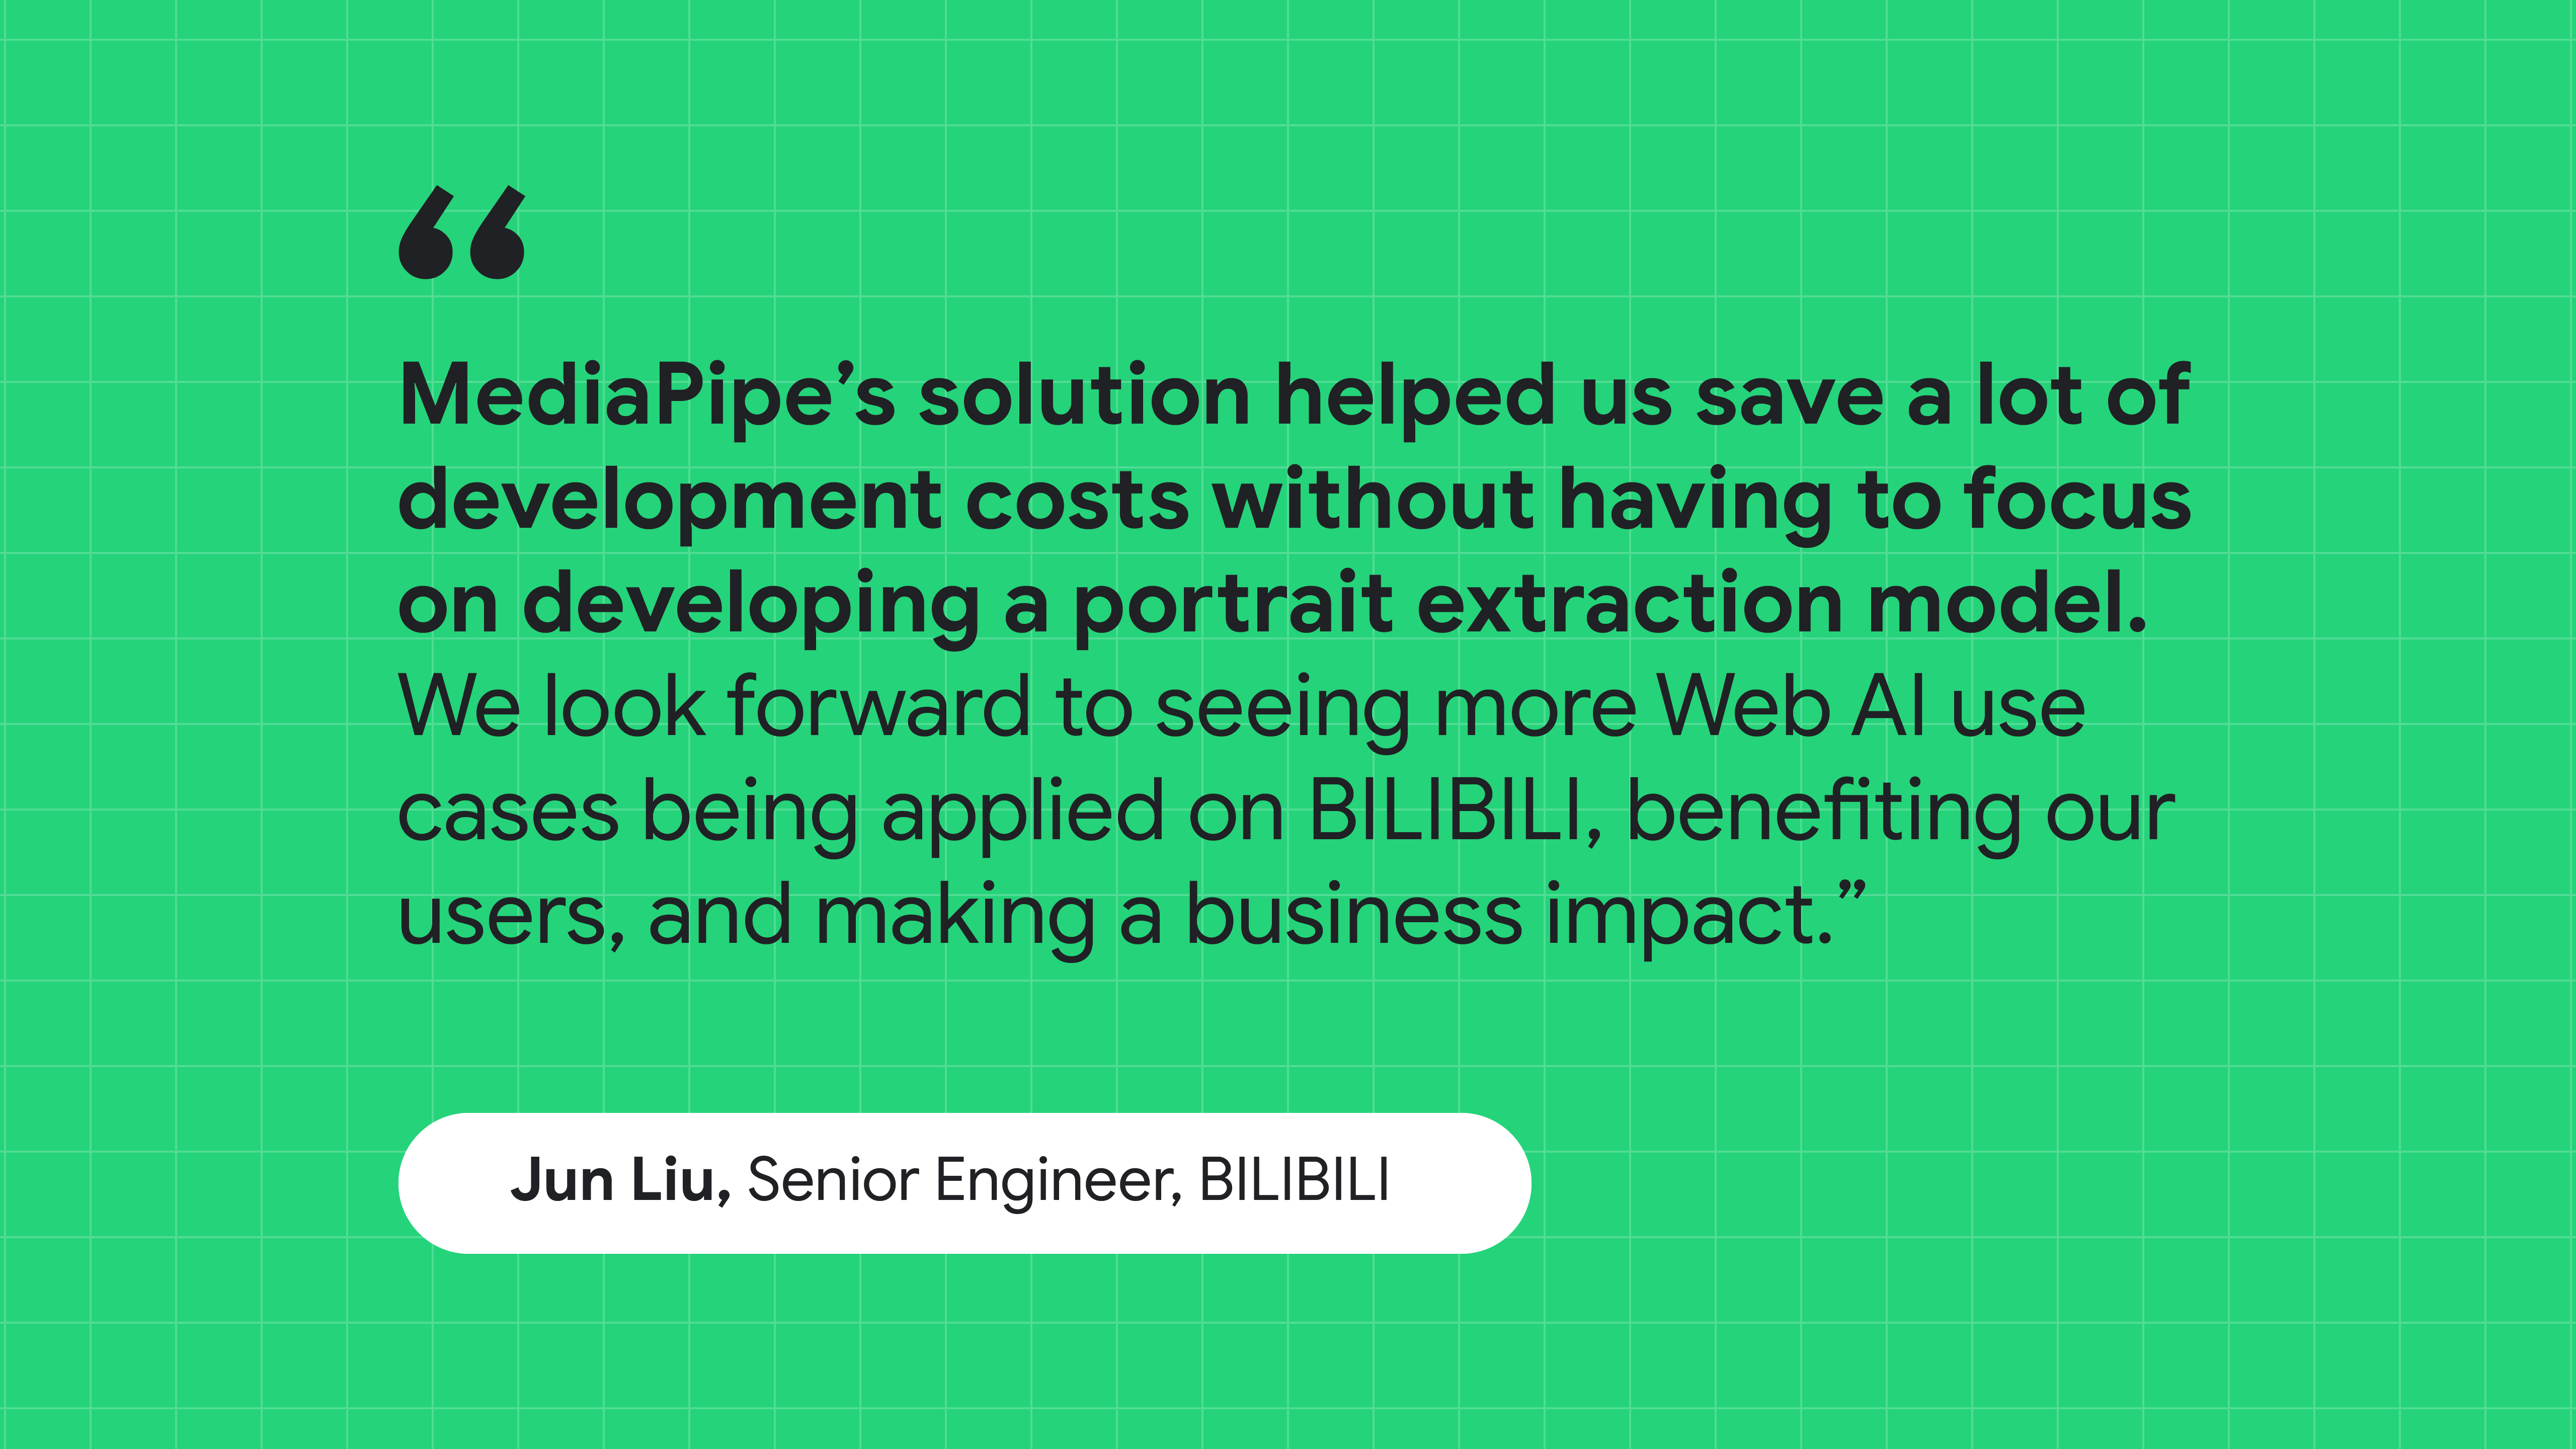 BILIBILI के सीनियर इंजीनियर जून लिउ का एक उद्धरण: MediaPipe के समाधान ने पोर्ट्रेट एक्सट्रैक्शन मॉडल बनाने पर ध्यान दिए बिना, डेवलपमेंट का खर्च बचाने में मदद की.